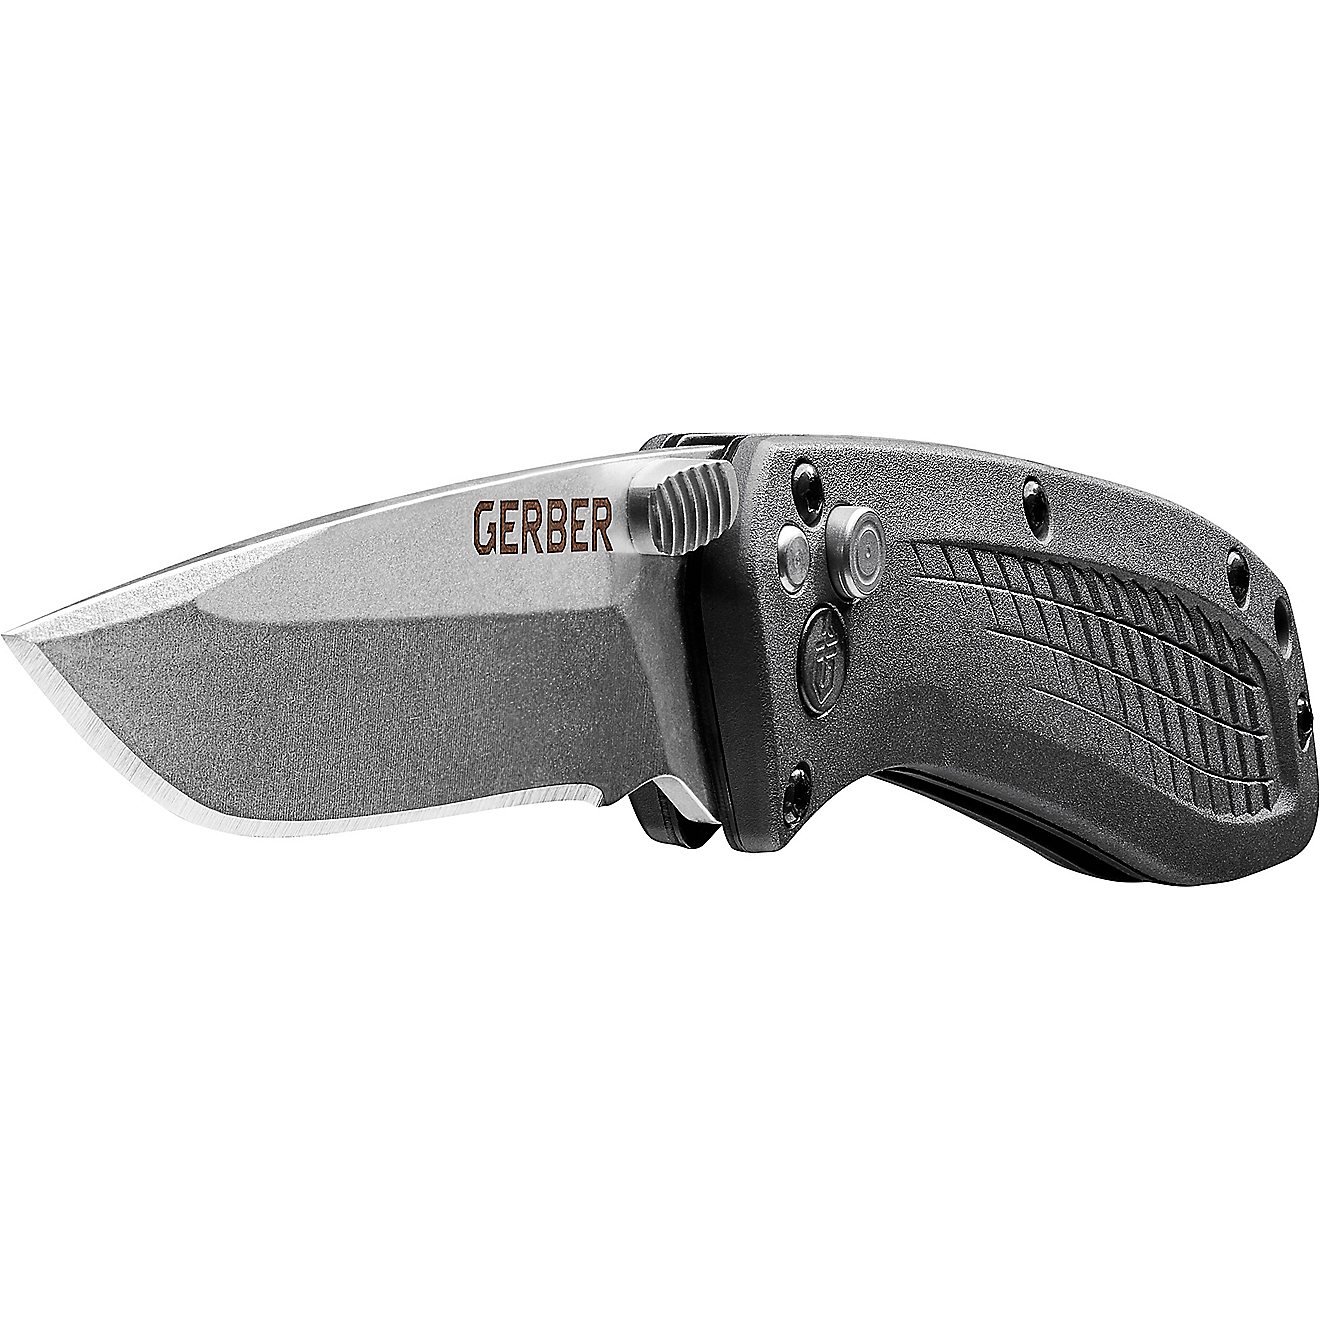 Gerber US-Assist S30V Folding Knife                                                                                              - view number 2